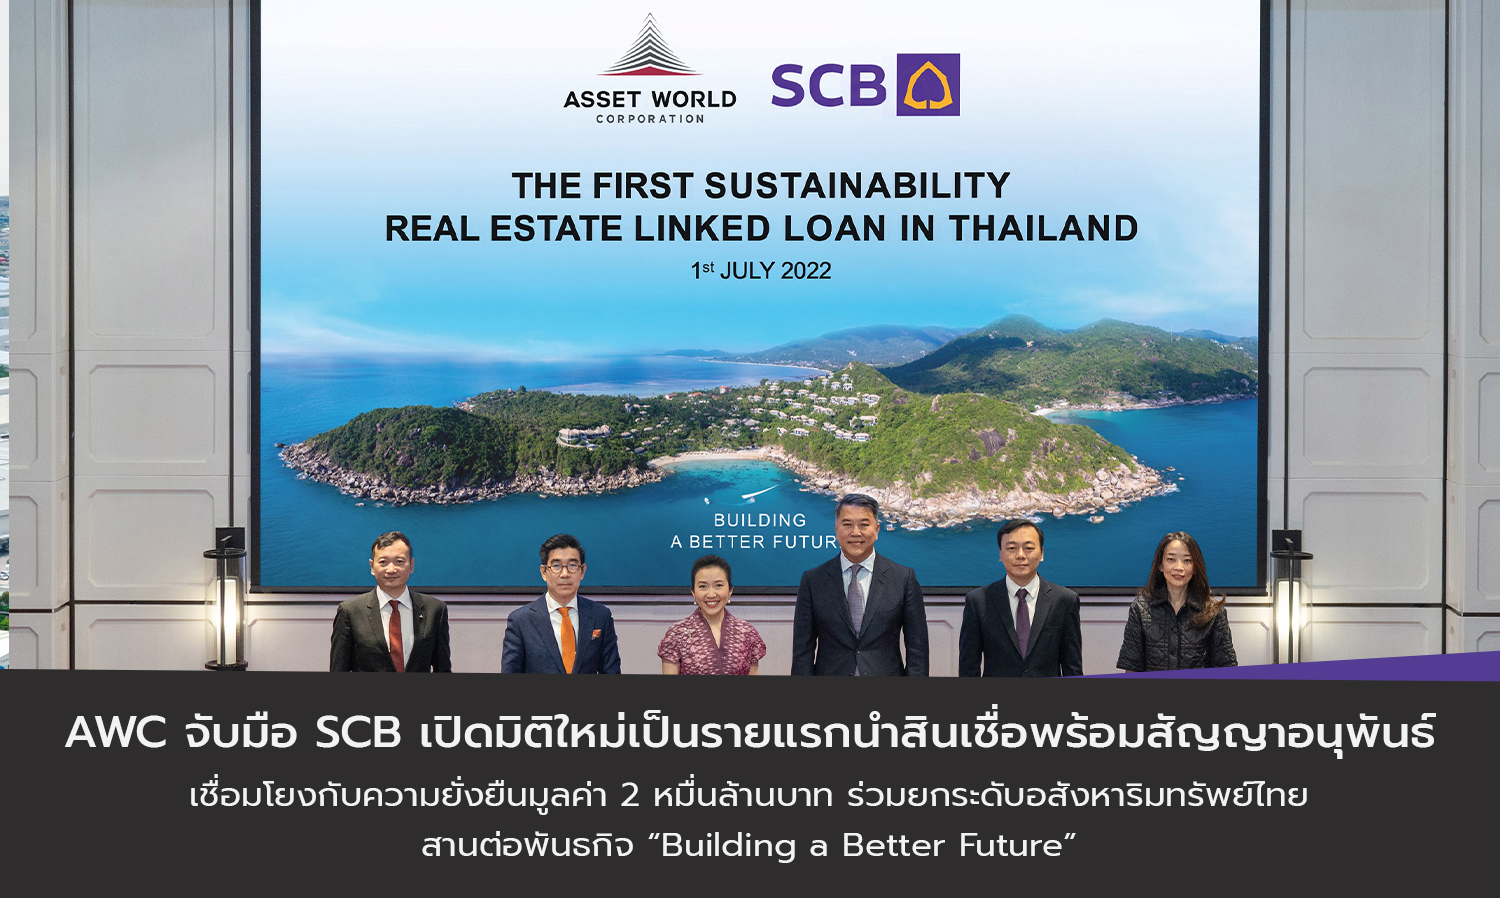 AWC จับมือ SCB เปิดมิติใหม่เป็นรายแรกนำสินเชื่อพร้อมสัญญาอนุพันธ์เชื่อมโยงกับความยั่งยืนมูลค่า 2 หมื่นล้านบาท ร่วมยกระดับอสังหาริมทรัพย์ไทย สานต่อพันธกิจ “Building a Better Future”